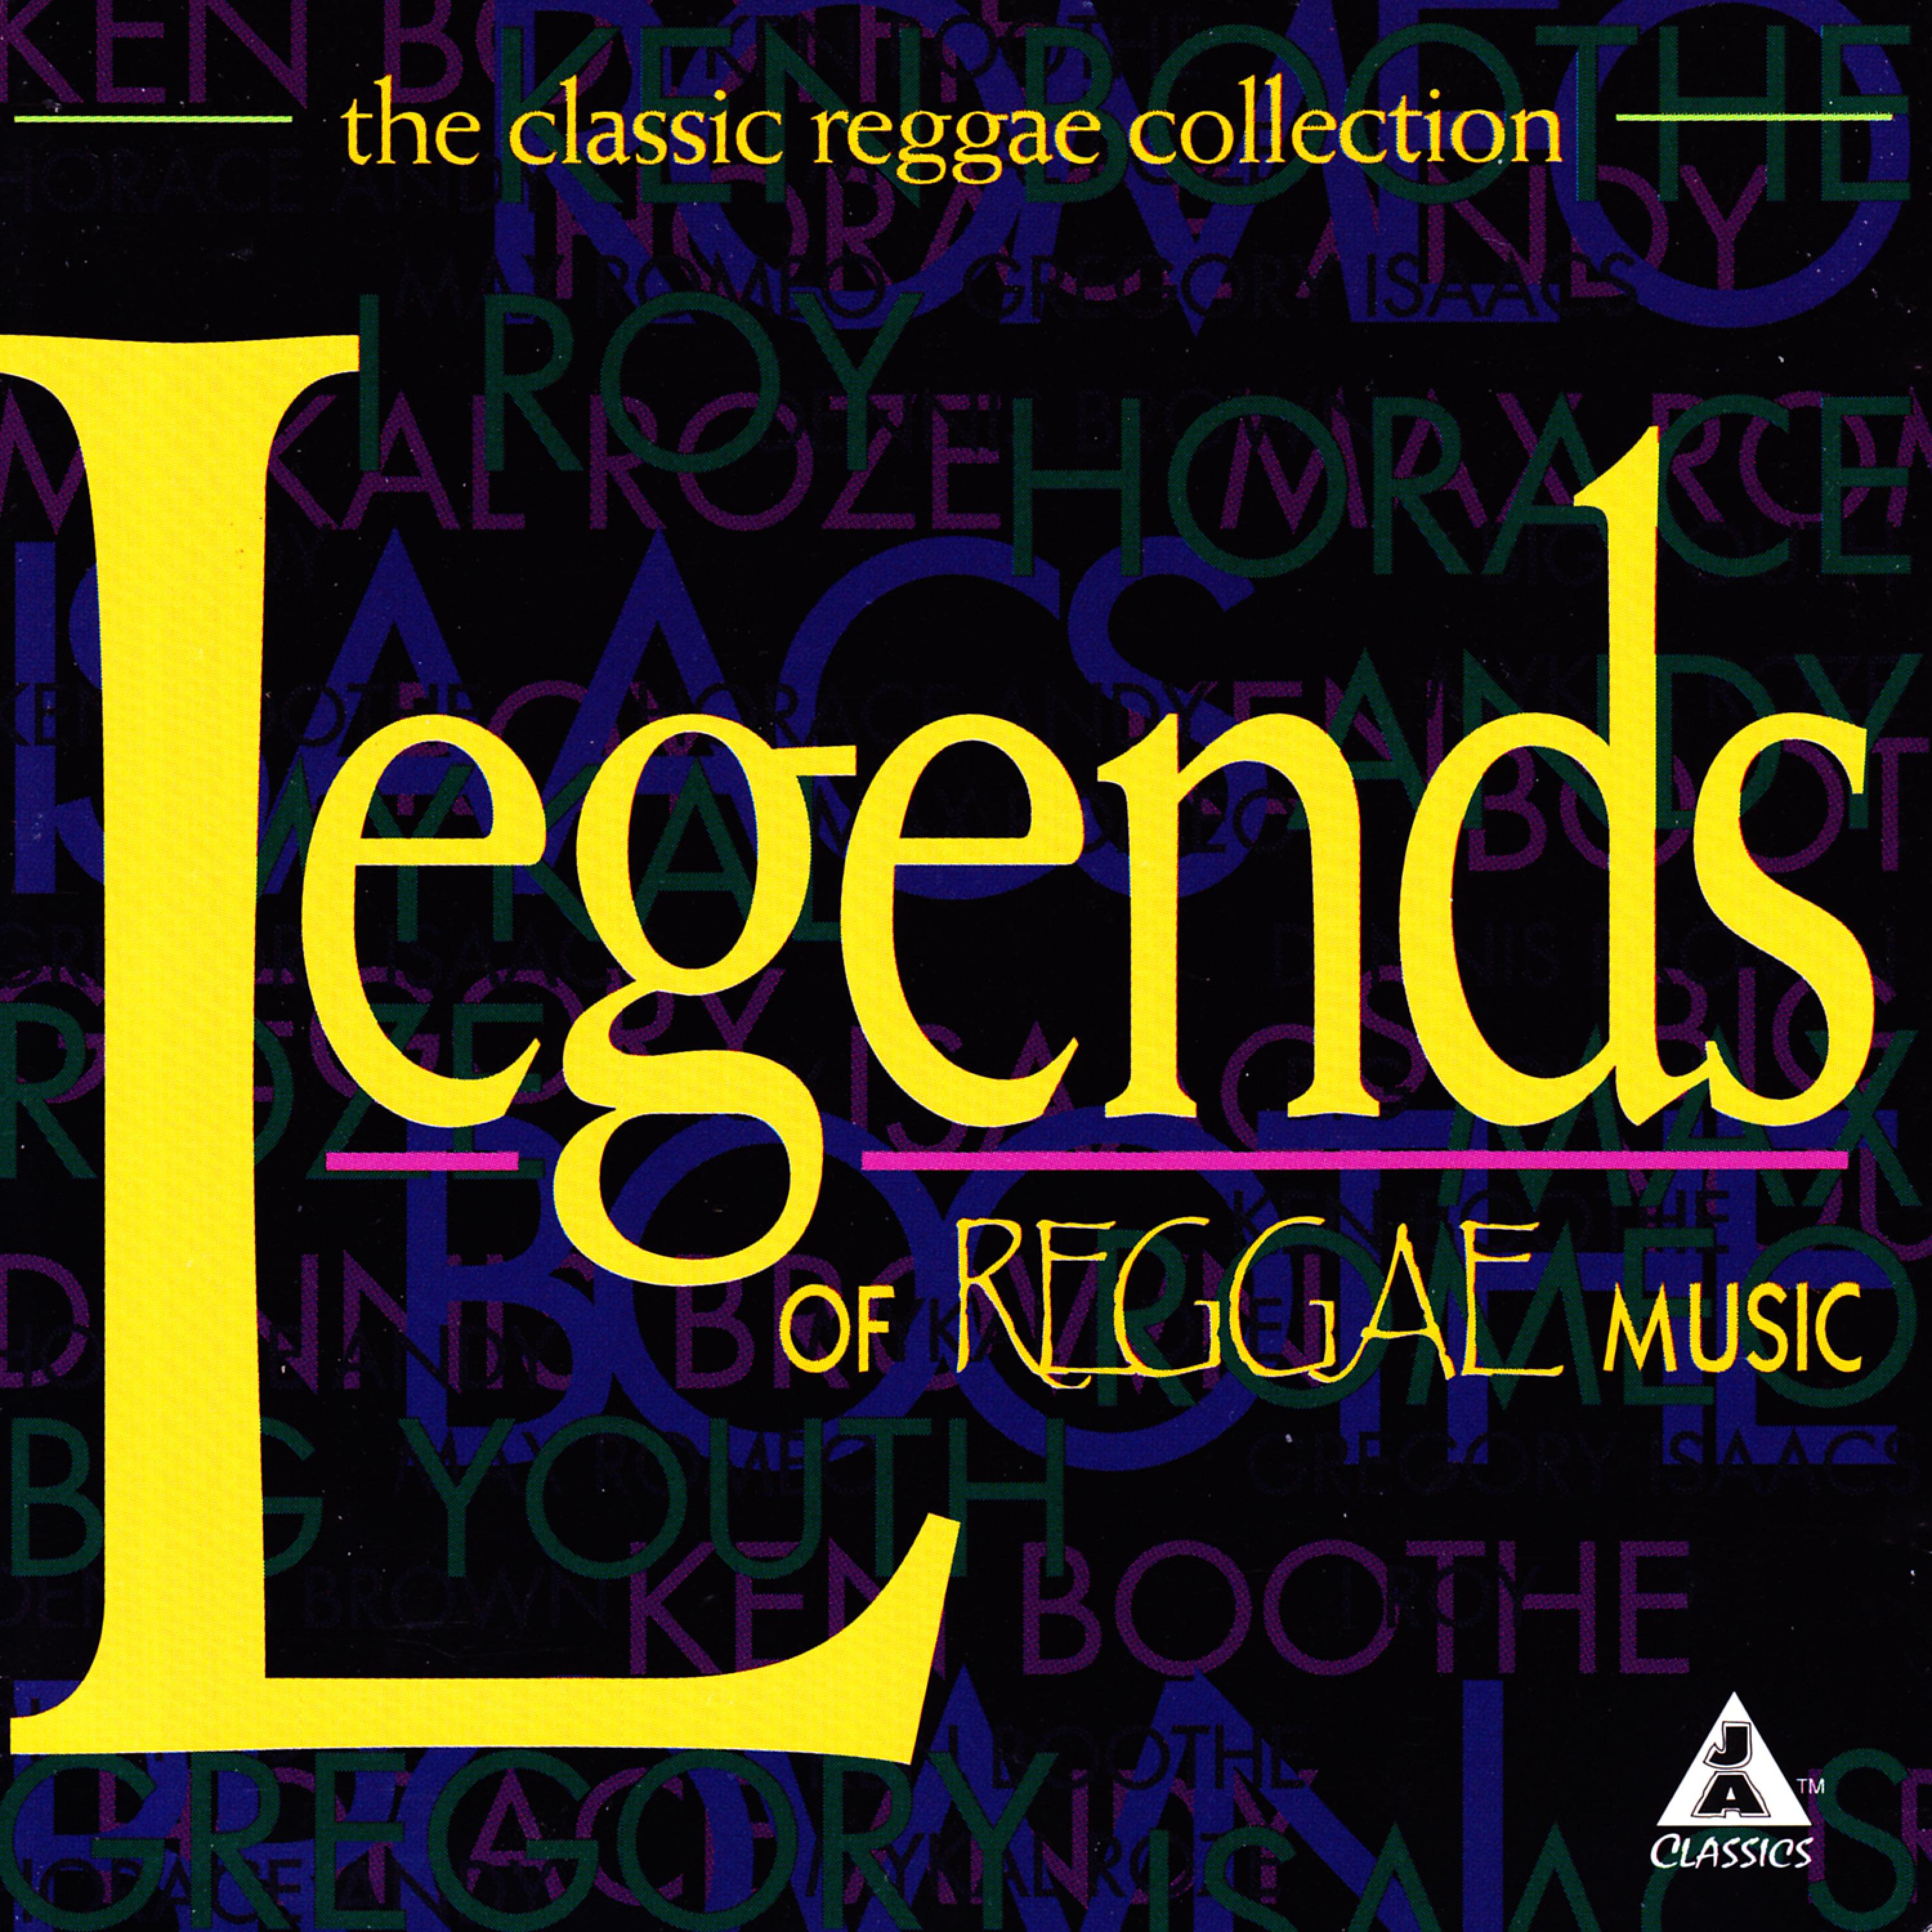 The Classic Reggae Collection: Legends of Reggae Music